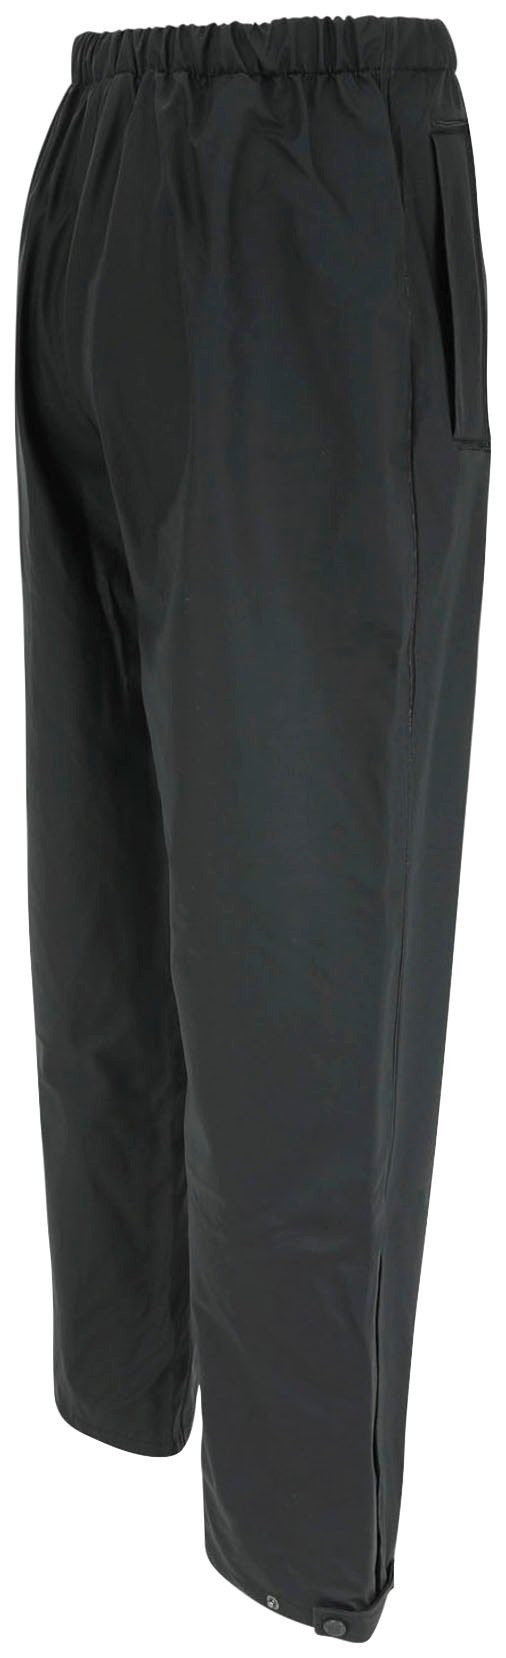 Herock Regenhose Pontus Arbeitshose wasserdicht, Robuste verschiedenen Farben verschiedene Farben) schwarz (in Überziehhose wind- und